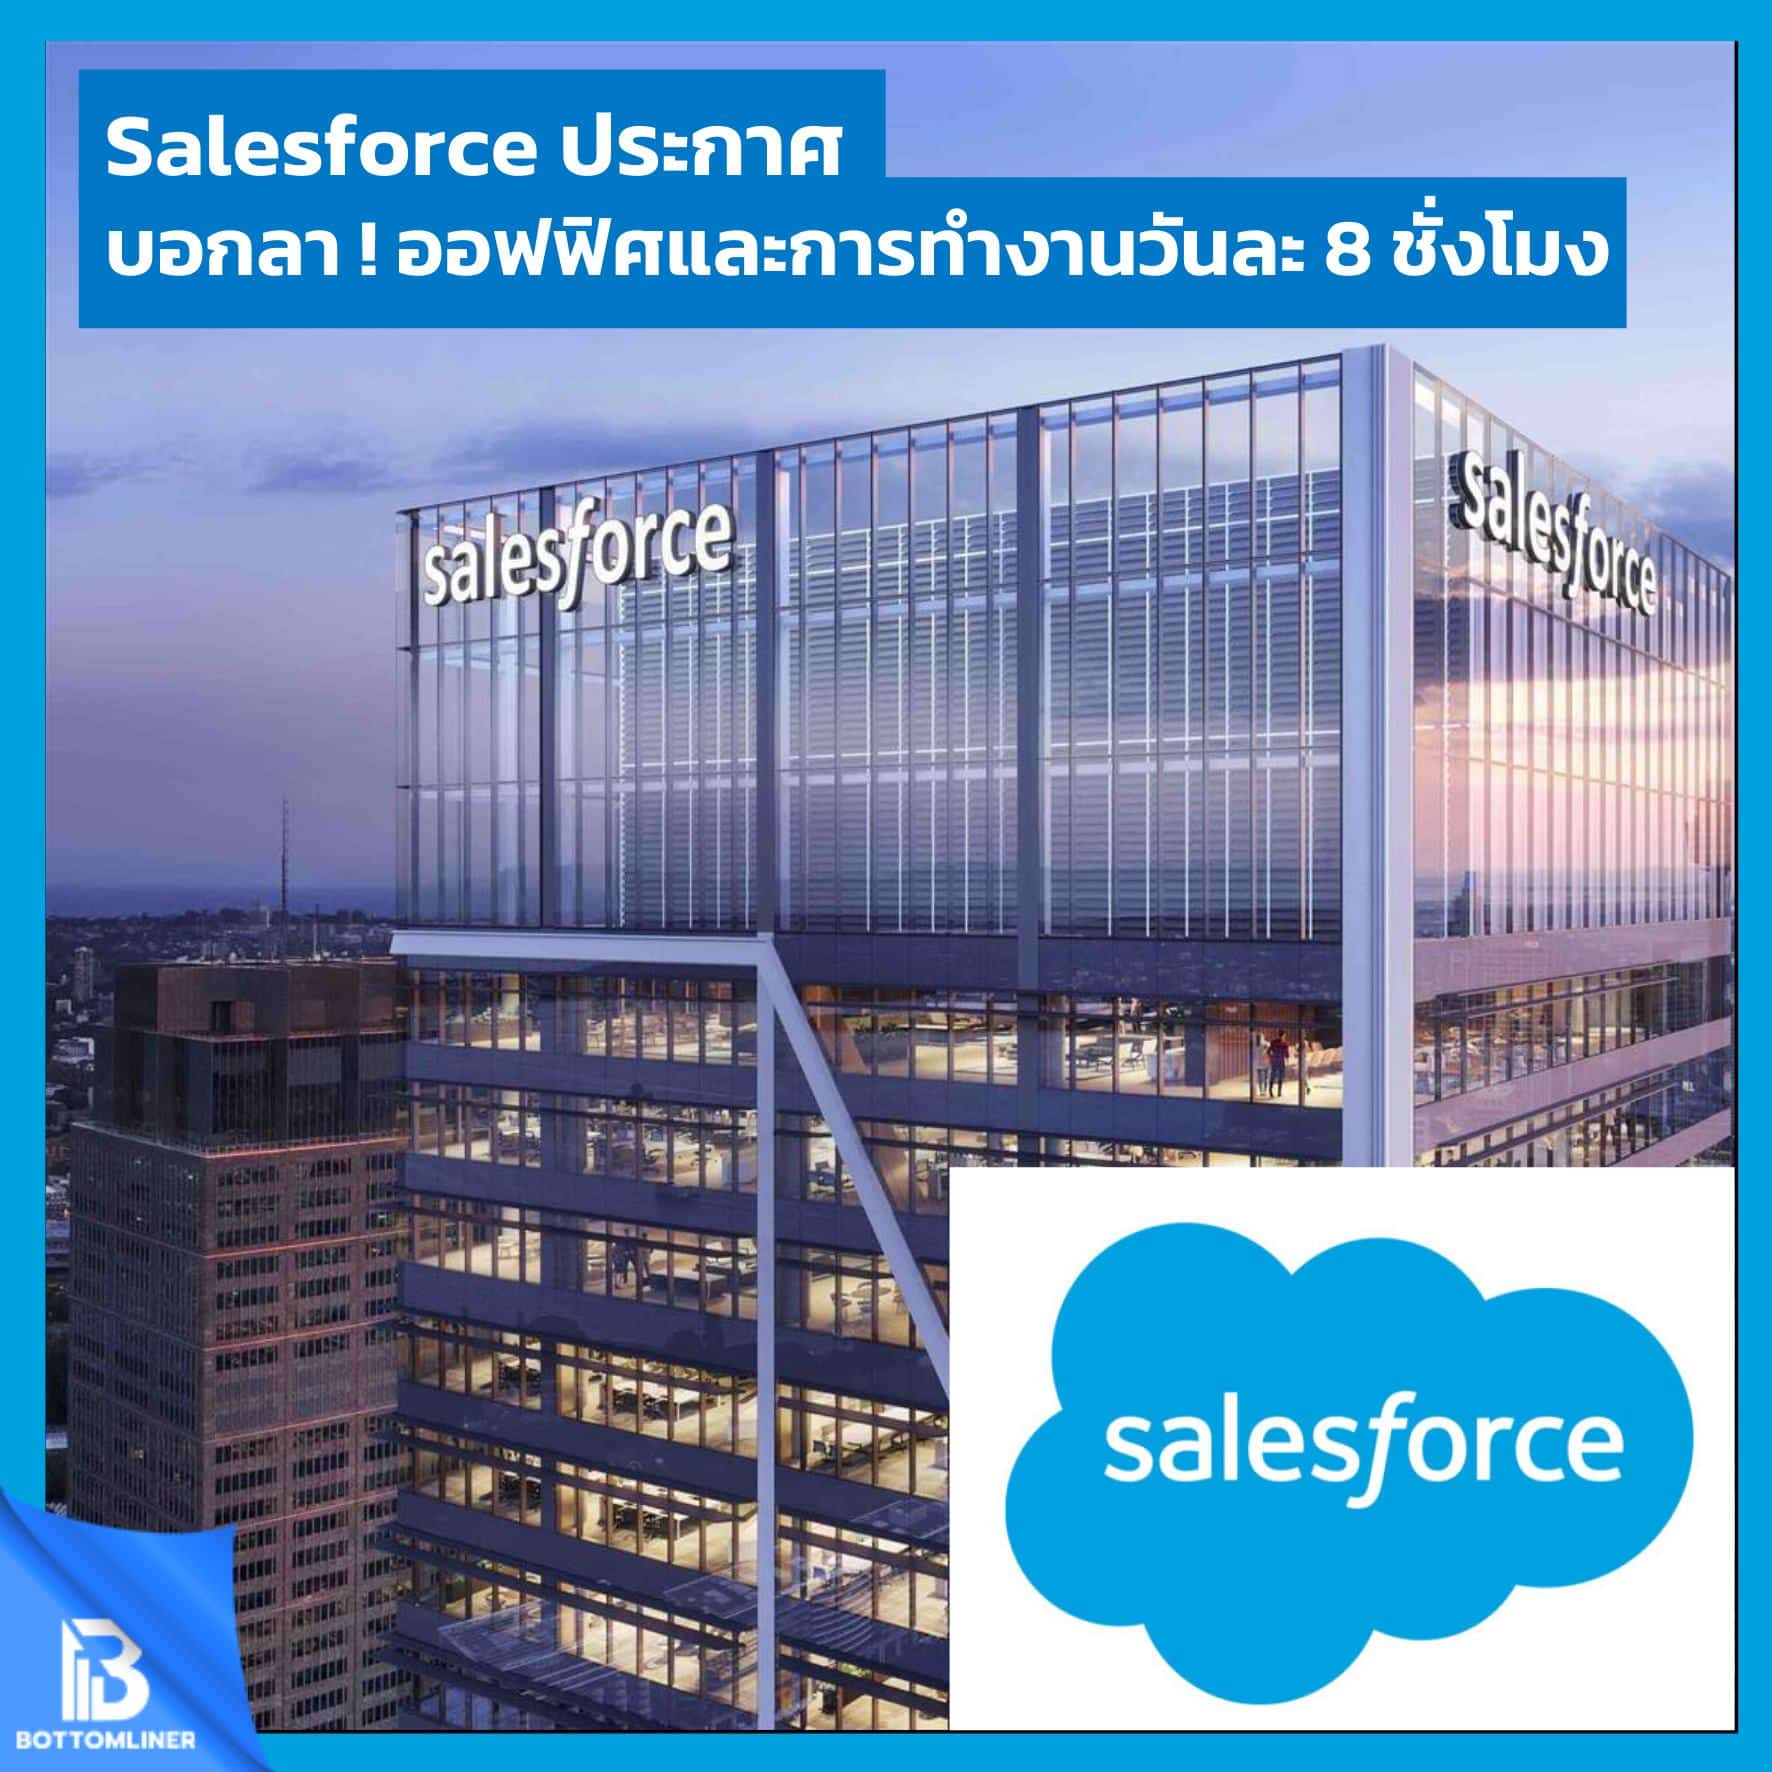 Salesforce ประกาศ บอกลาออฟฟิศ และการทำงานวันละ 8 ชั่วโมง !